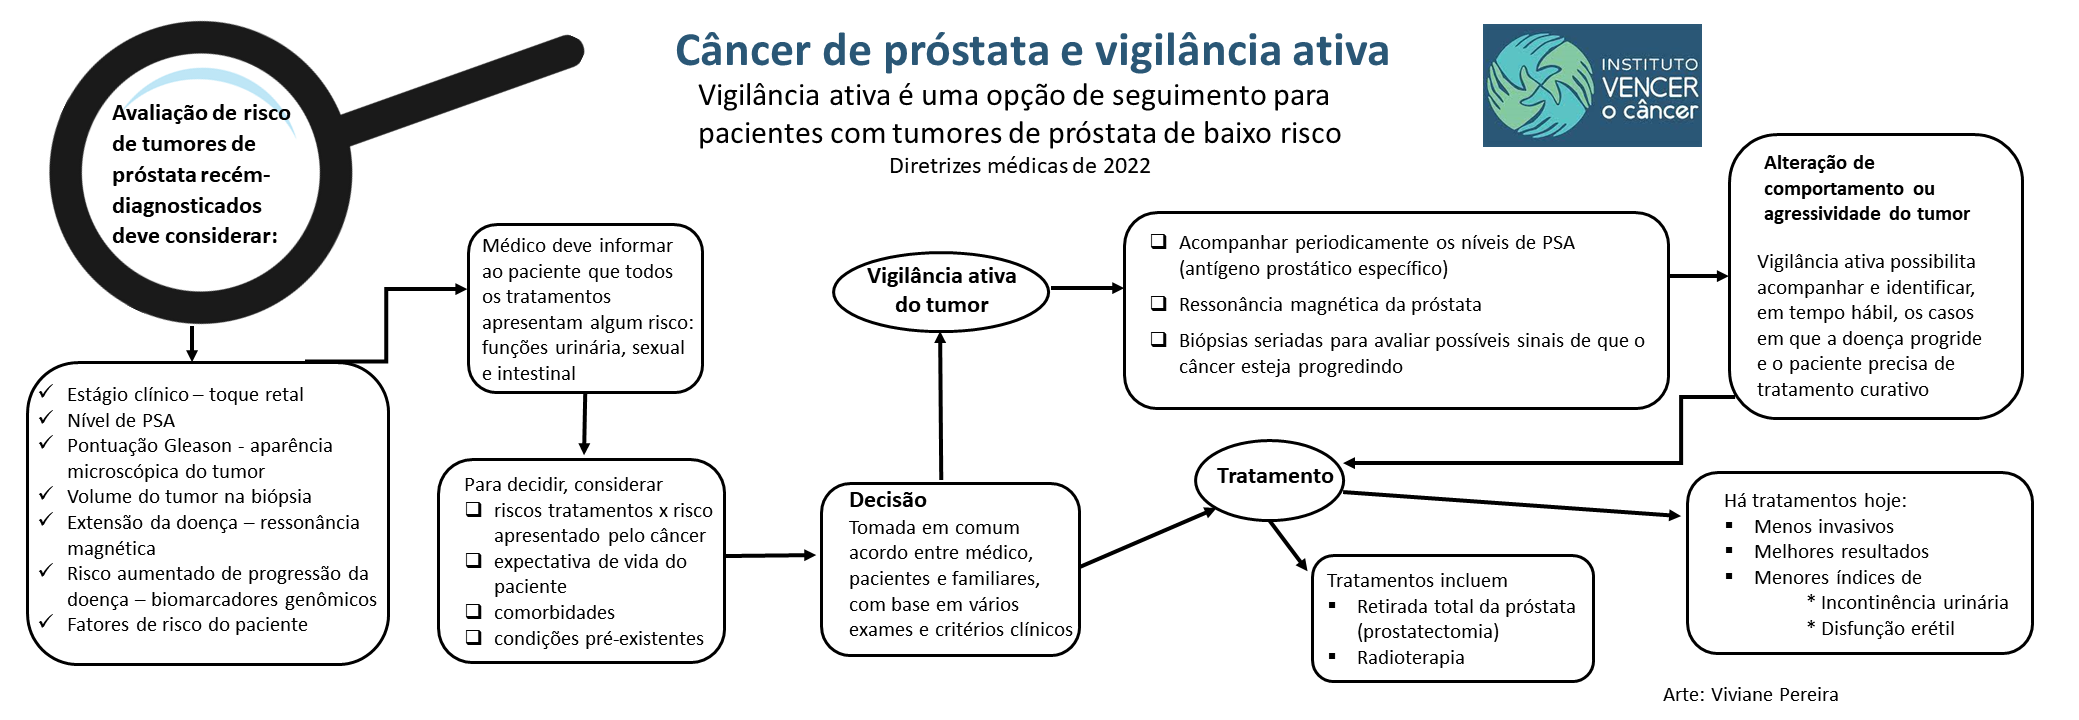 Câncer de próstata sob vigilância ativa: uma forma de tratamento